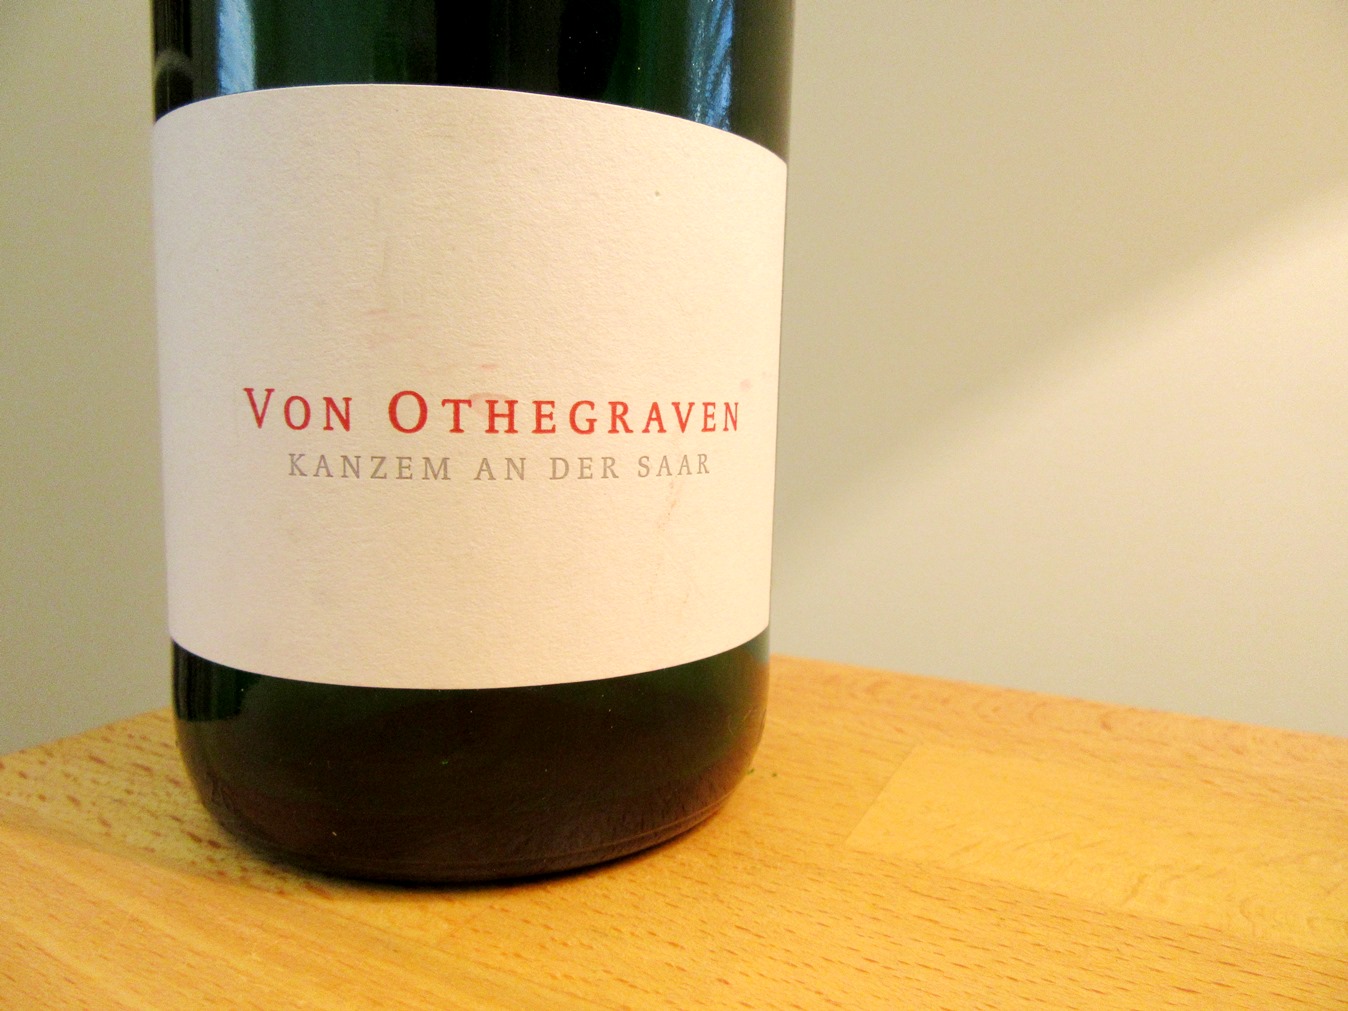 Von Othegraven, Max Riesling Trocken 2014, VDP Gutswein, Mosel, Germany, Wine Casual